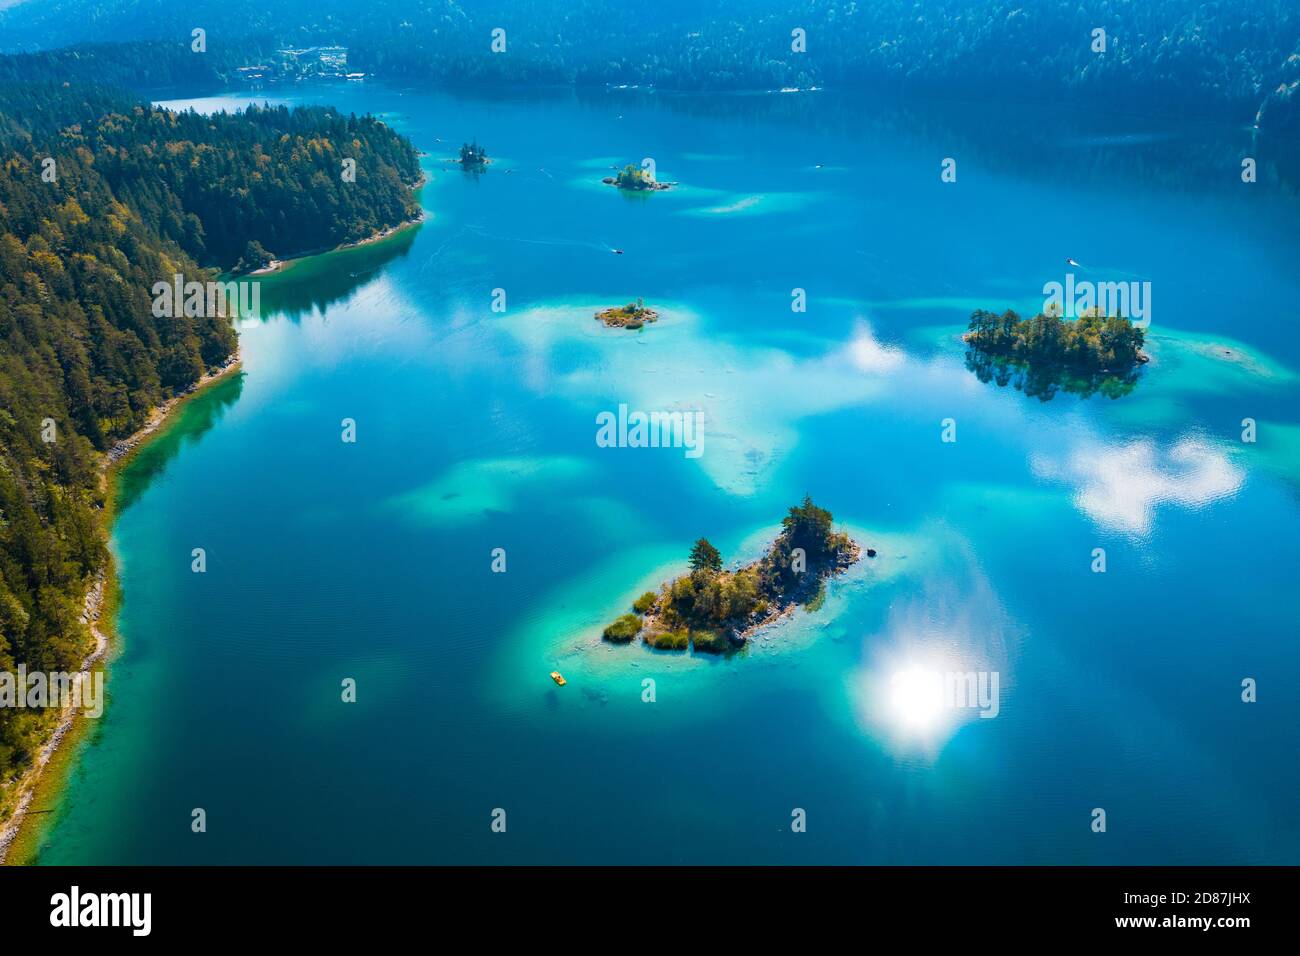 Vue aérienne sur le lac Eibsee, les petites îles dans l'eau turquoise Banque D'Images